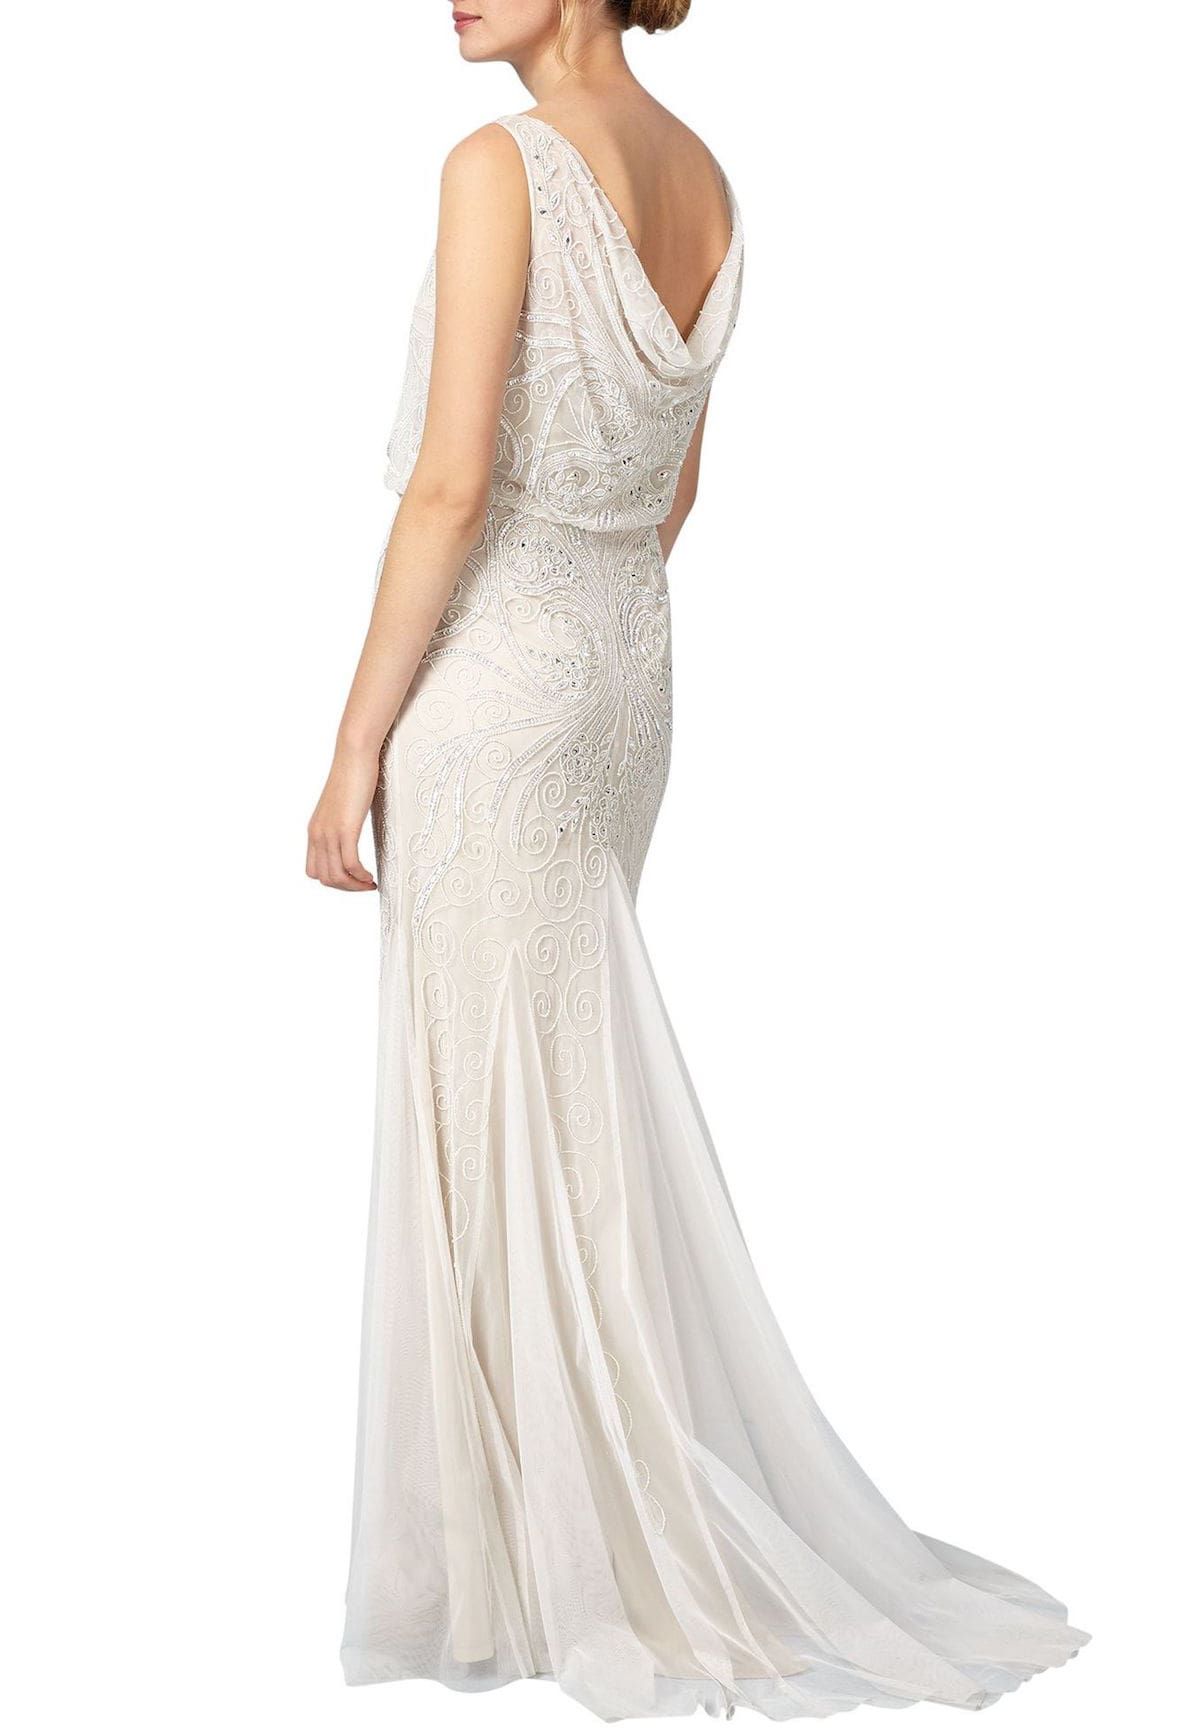 Violetta Dress Wedding Bride Bridal Gown #ad | Wedding dresses under 500,  A-line wedding dress, Wedding dresses